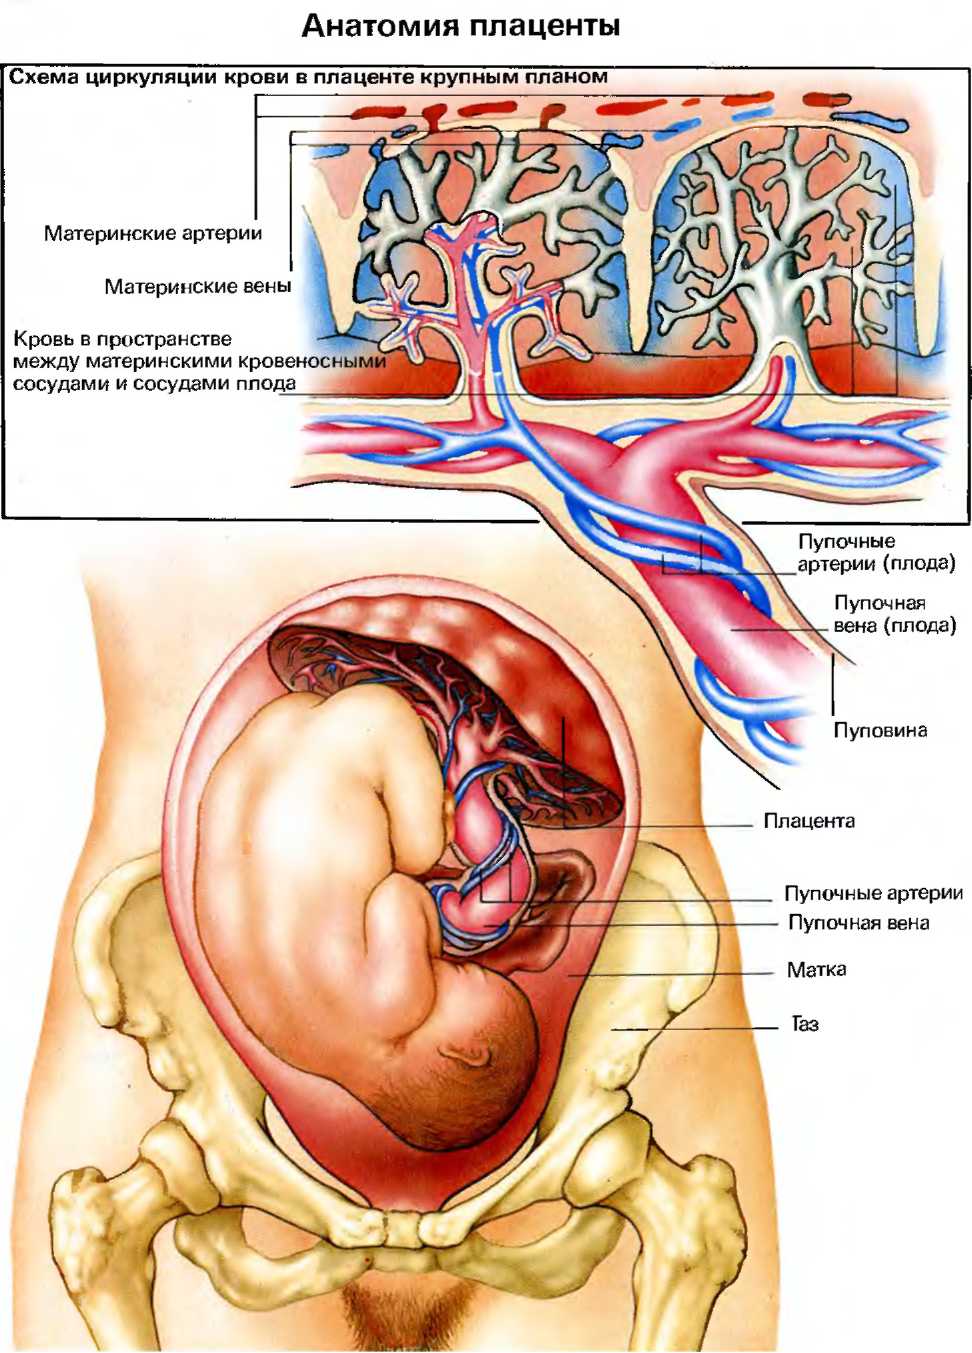 кровеносные сосуды матки и плаценты